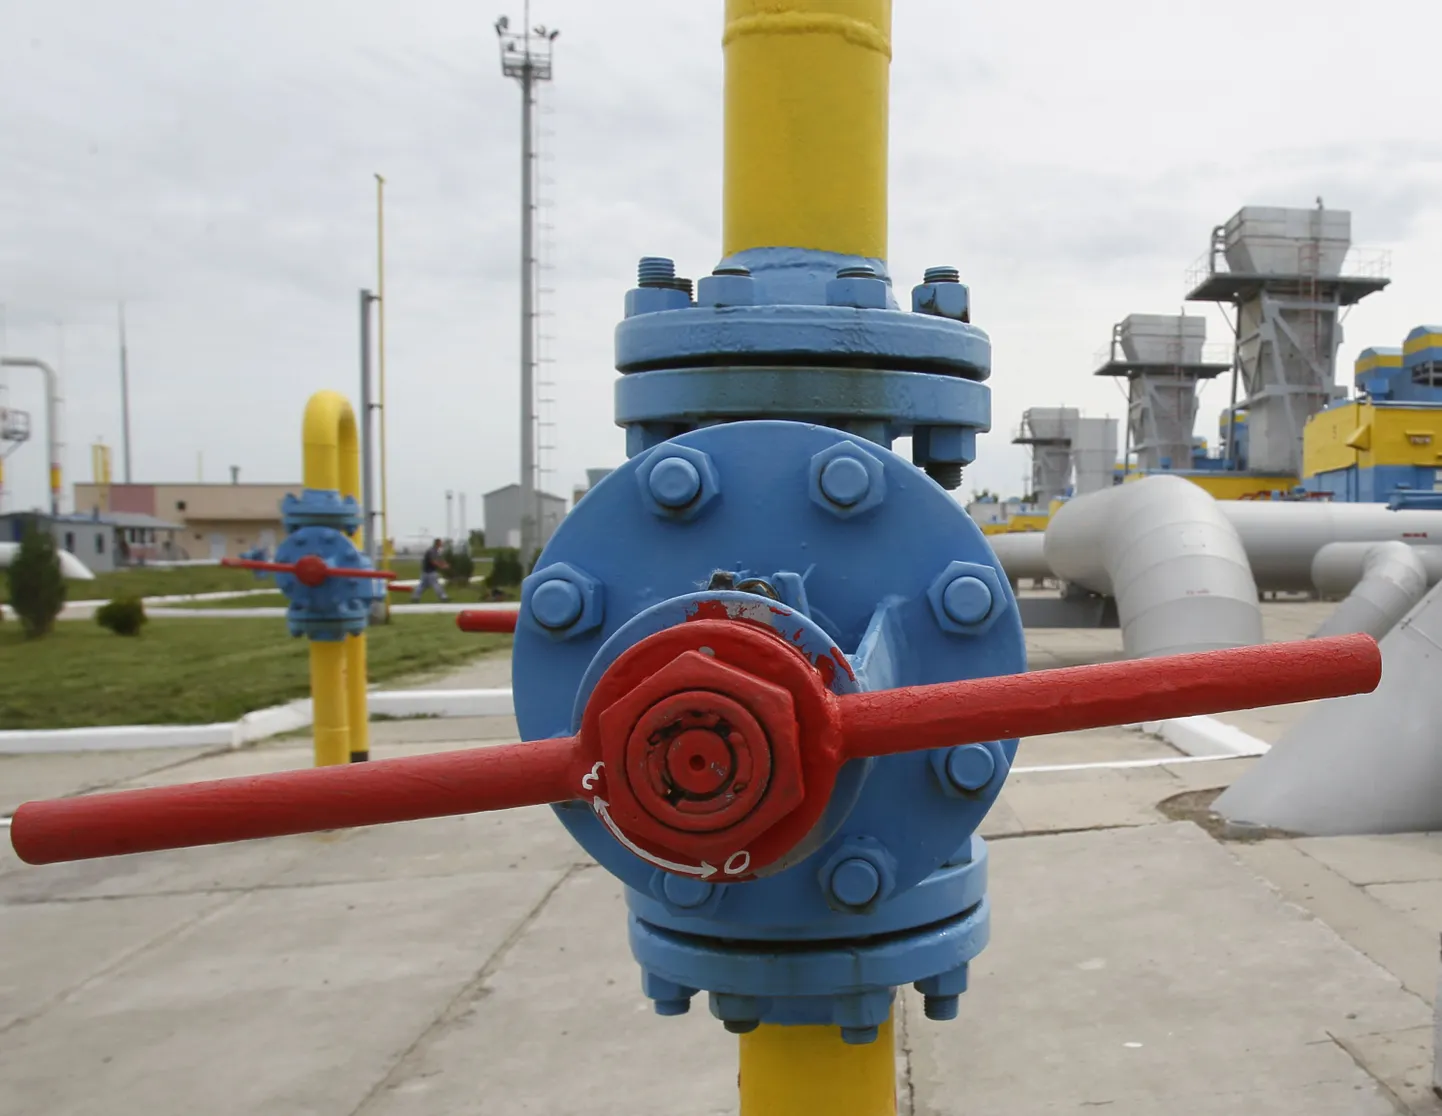 В прошлом году НАК "Нафтогаз Украины" прекратила отбор газа из подземных хранилищ и возобновила закупку российского газа в соответствии с действующим контрактом.